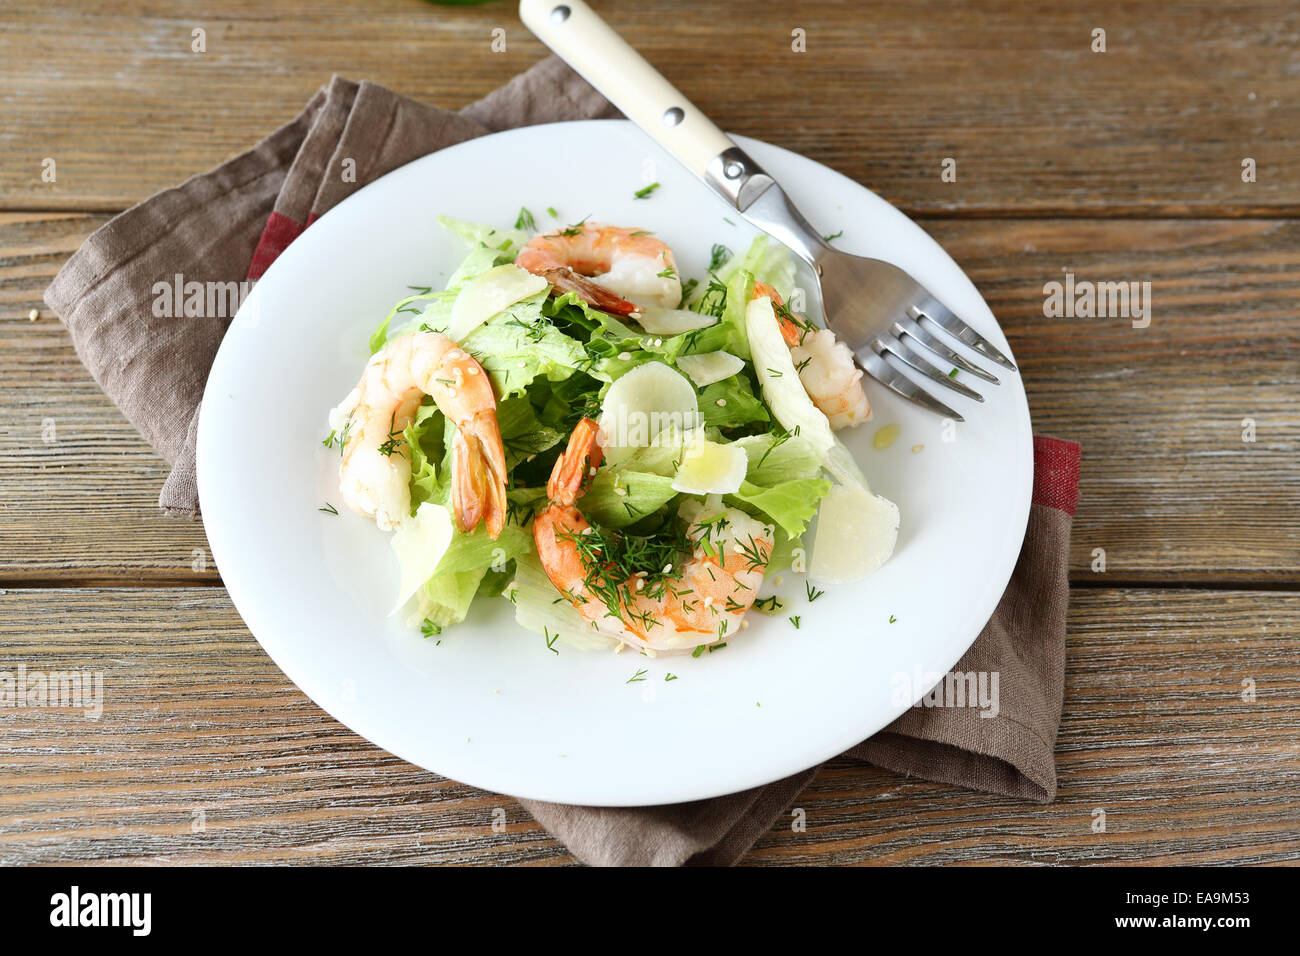 Salat mit Garnelen, Salat und Parmesan auf einem Teller, hölzernen Hintergrund Stockfoto